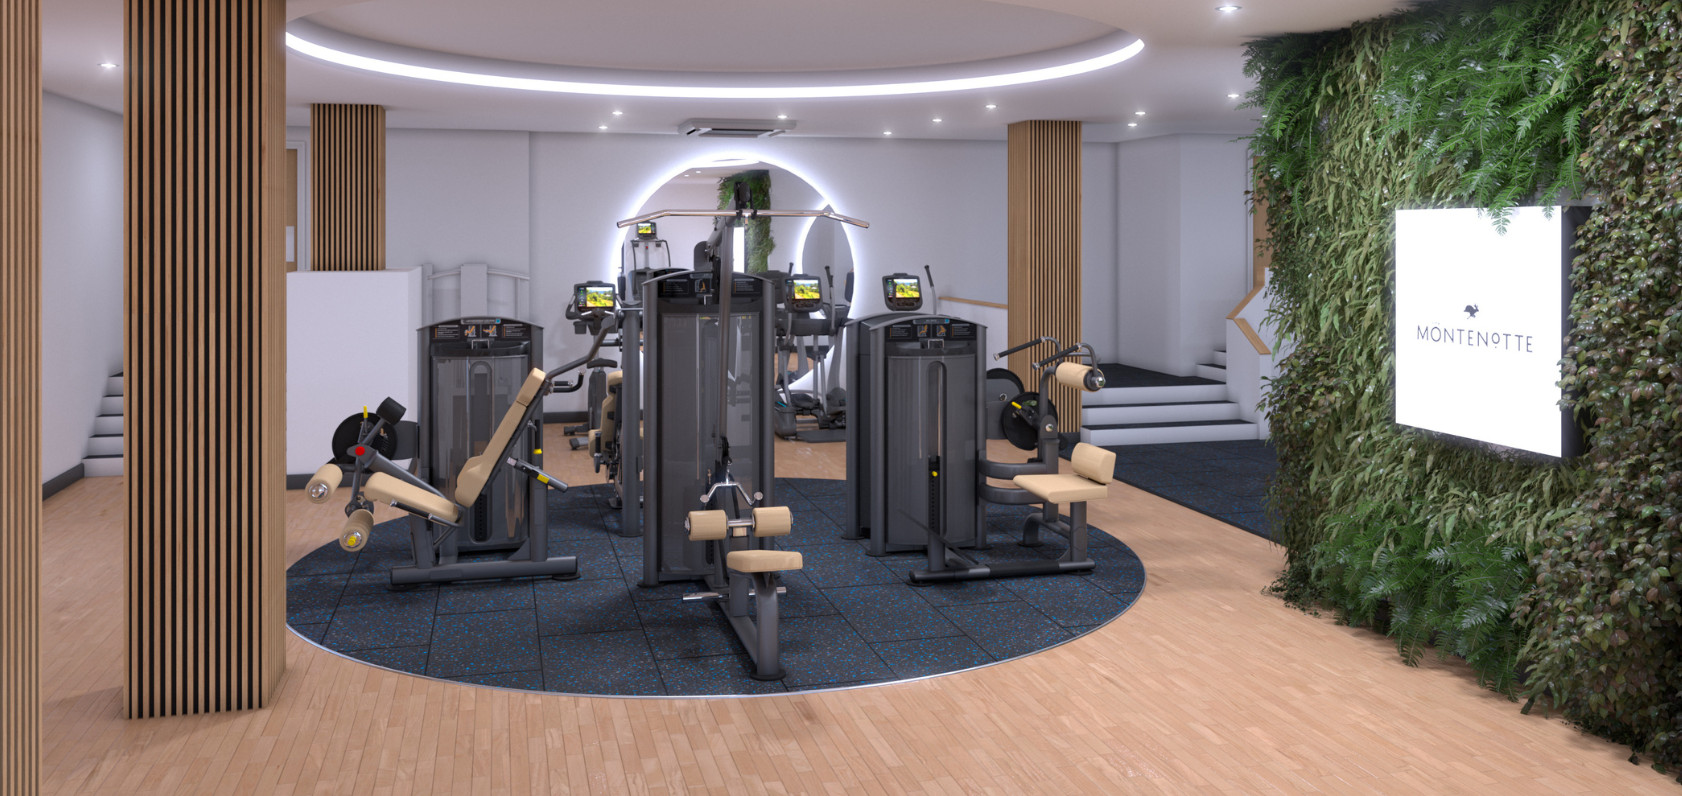 3d design cad image of a gym floor